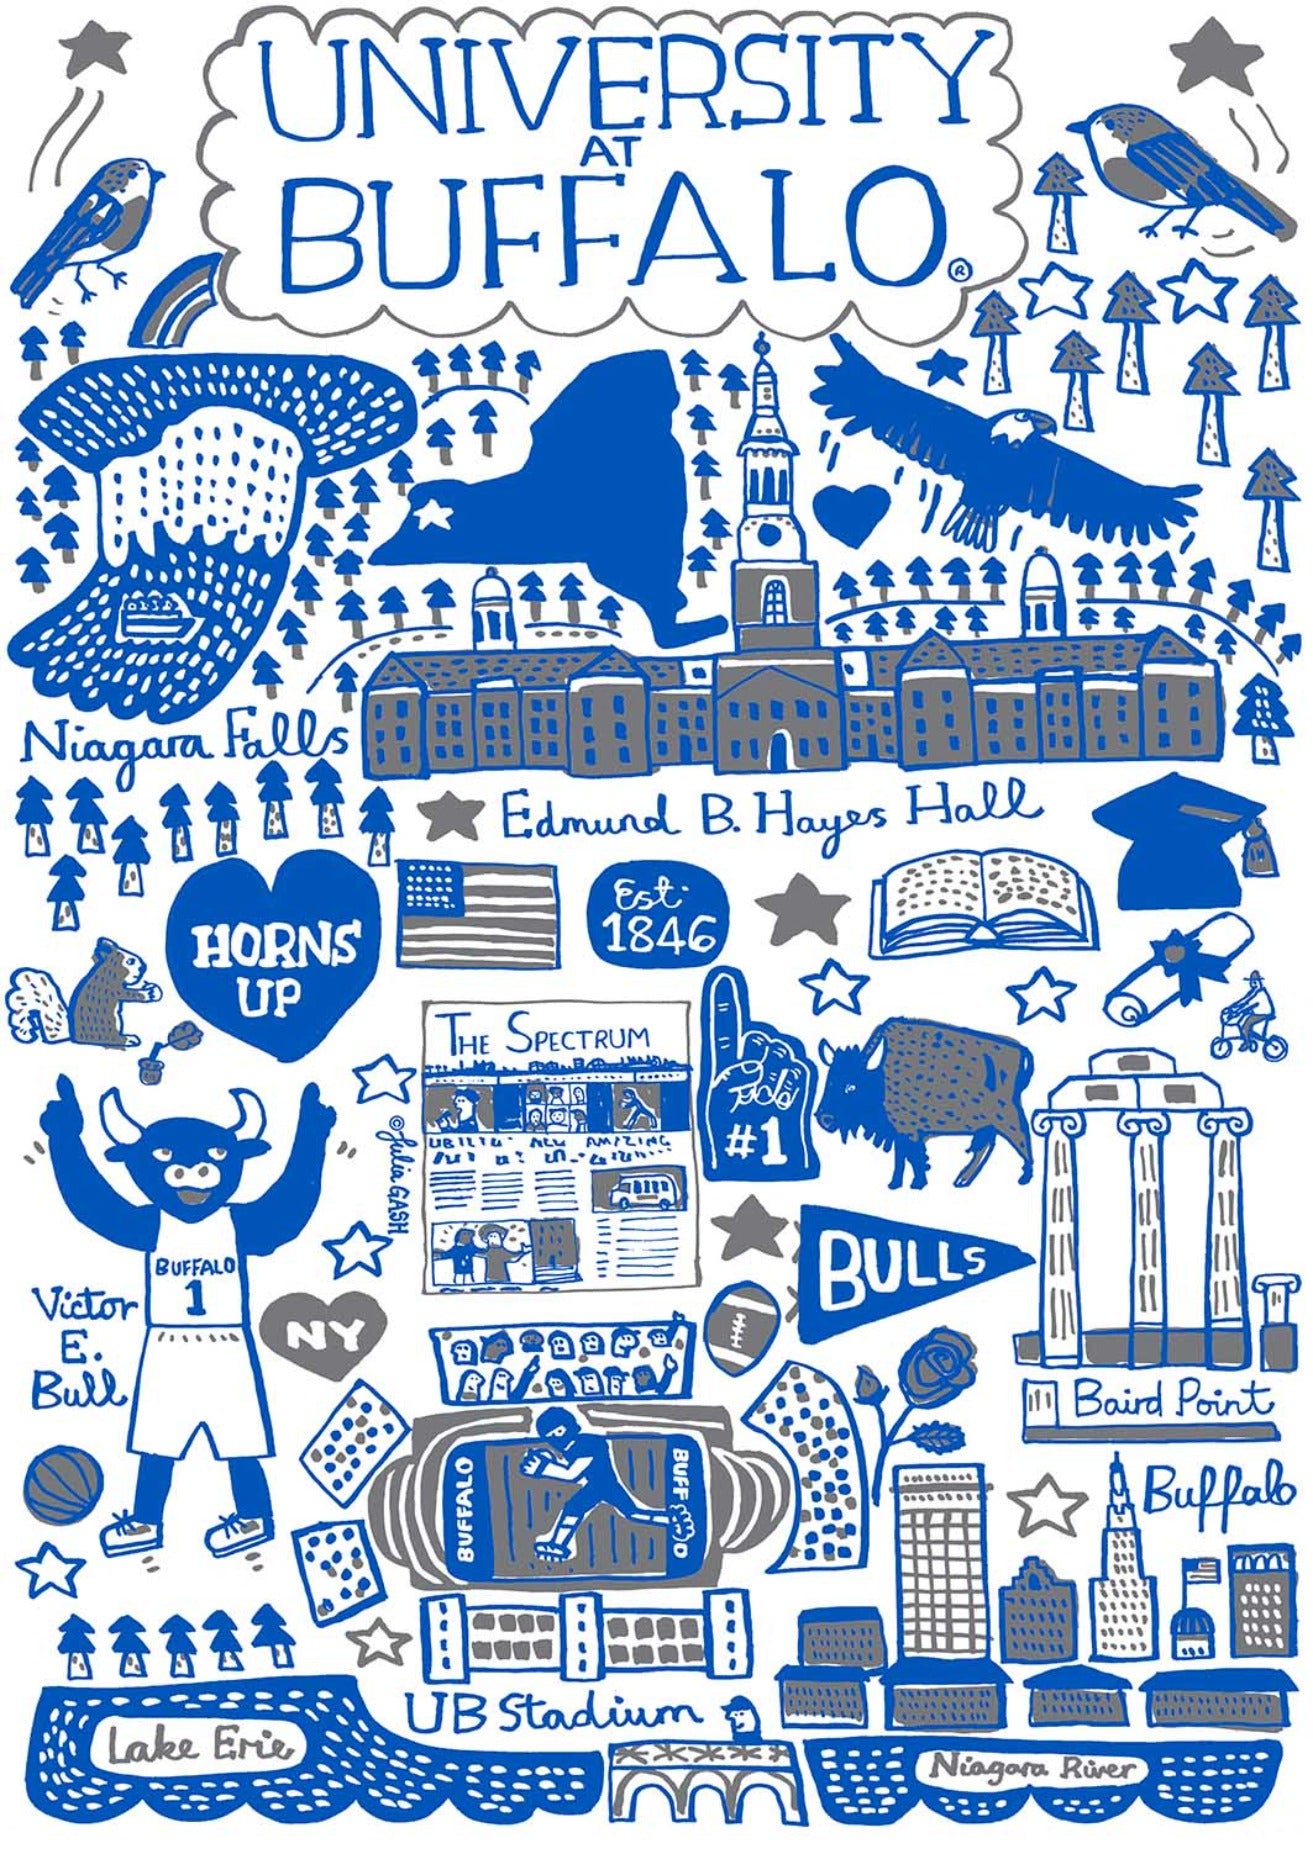 University of Buffalo by Julia Gash